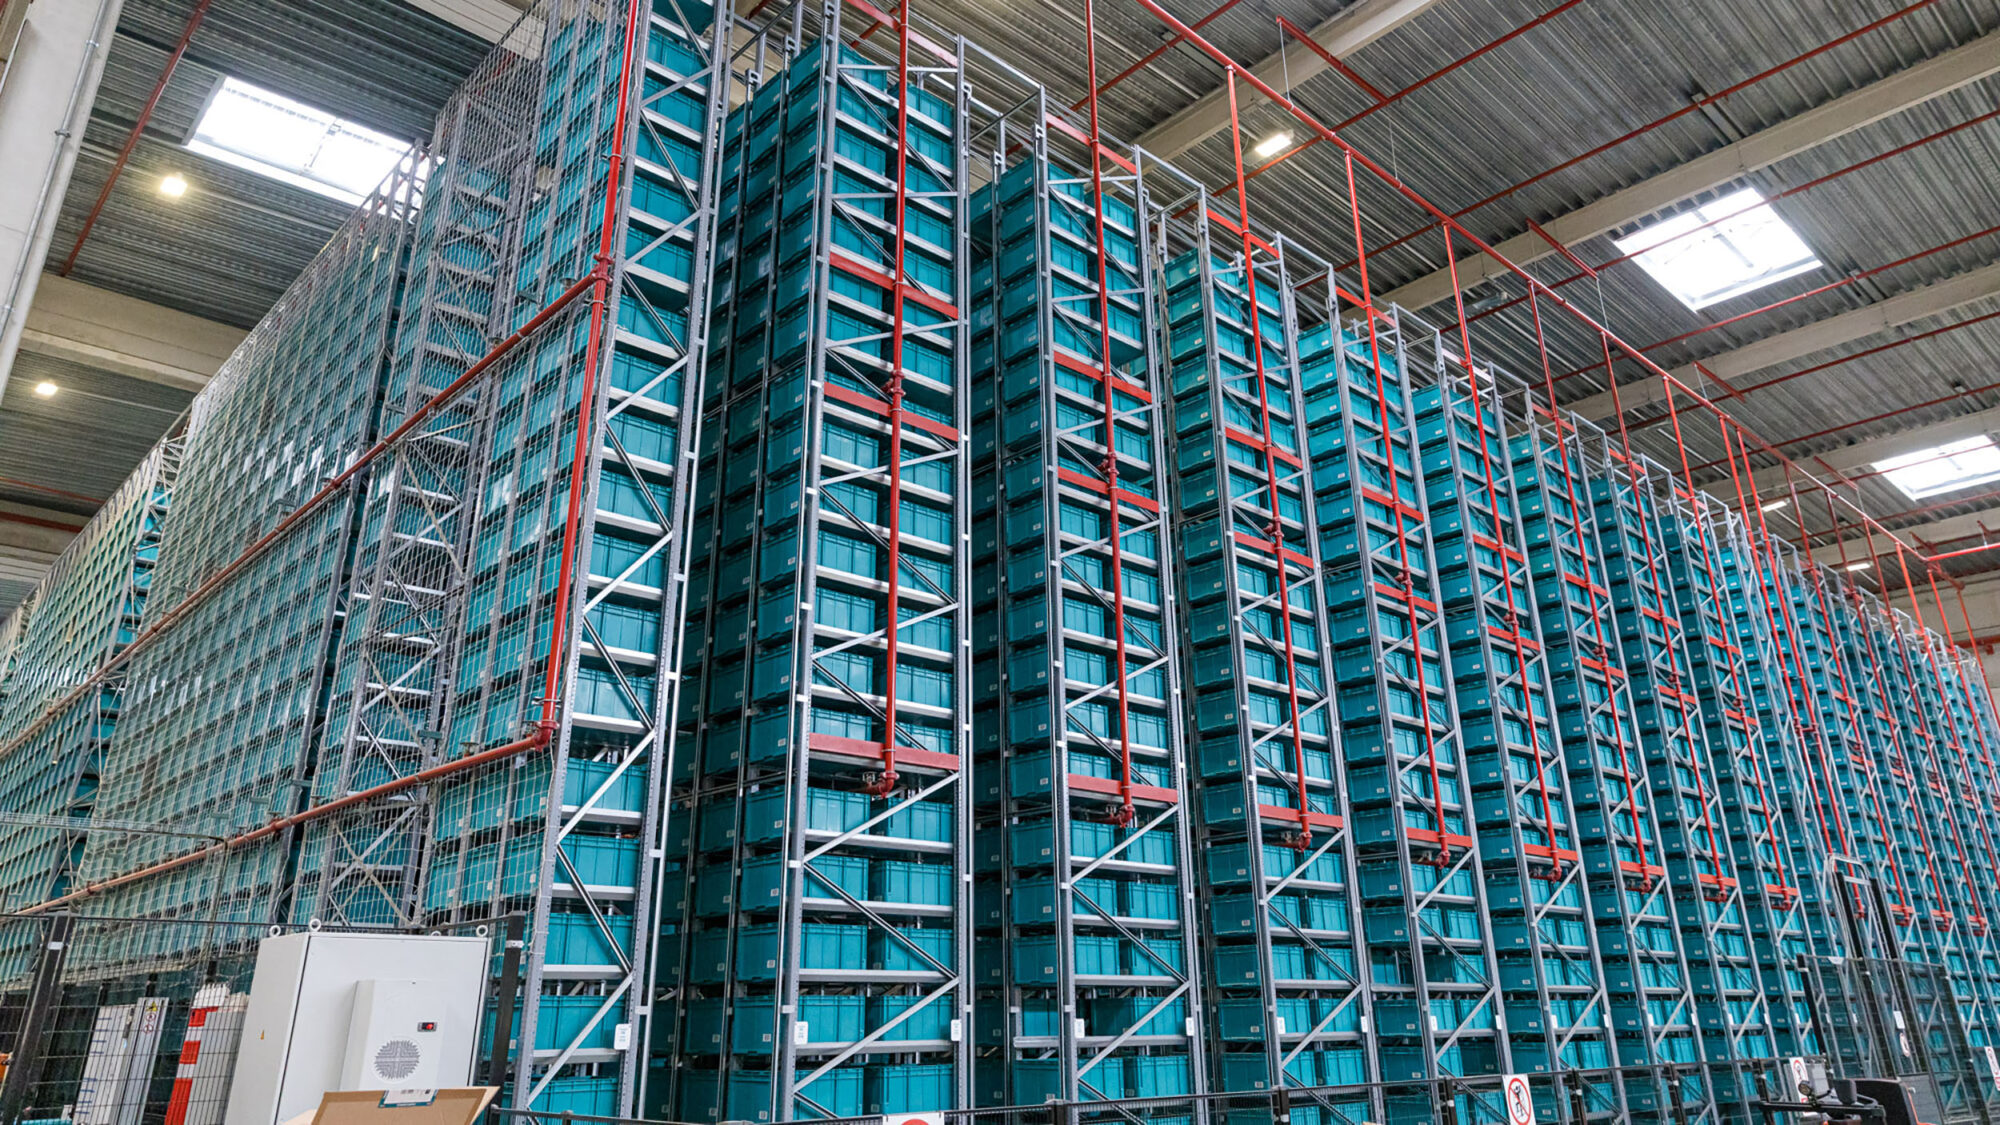 A large warehouse with modular design racks.